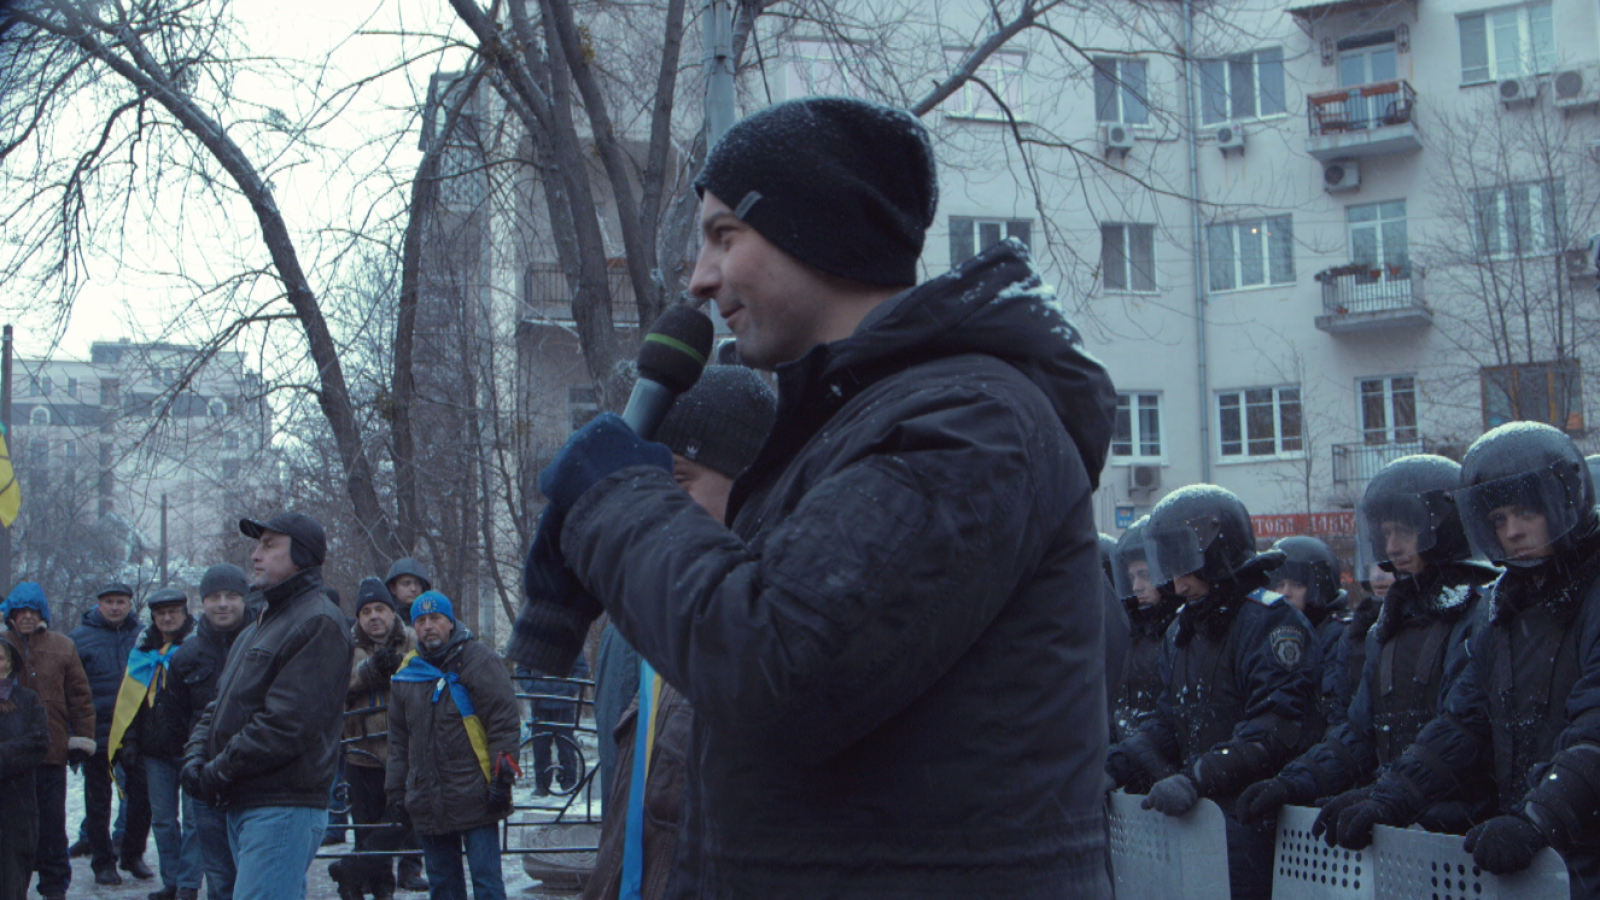 rus: Активіст з мікрофоном виступає перед публікою.